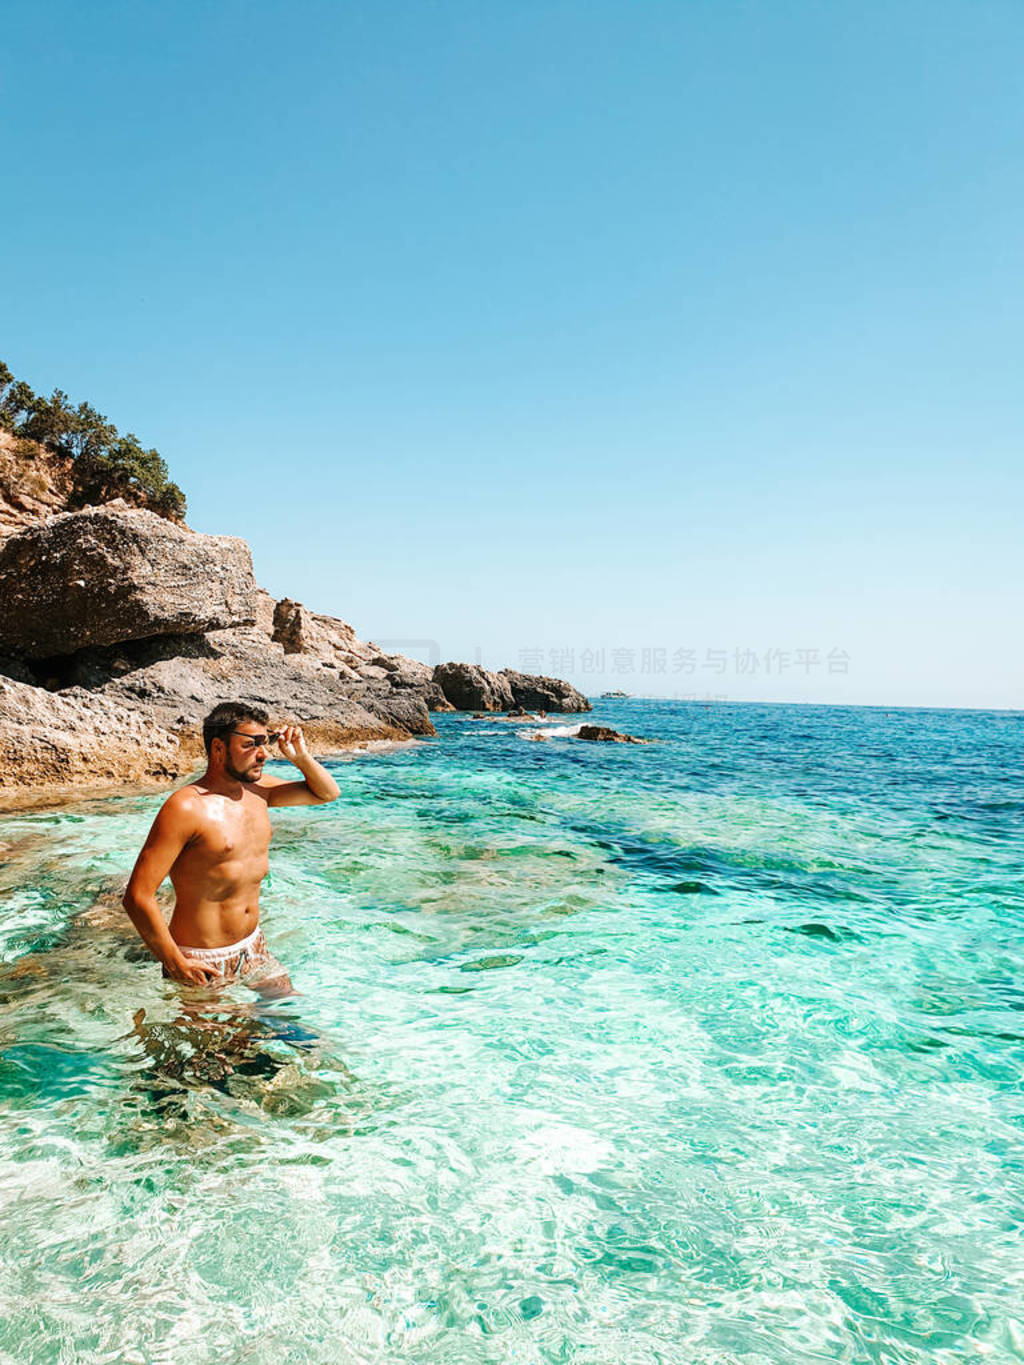 Sardinia Orosei coast Italy, guy on vacation at the Island of Sa